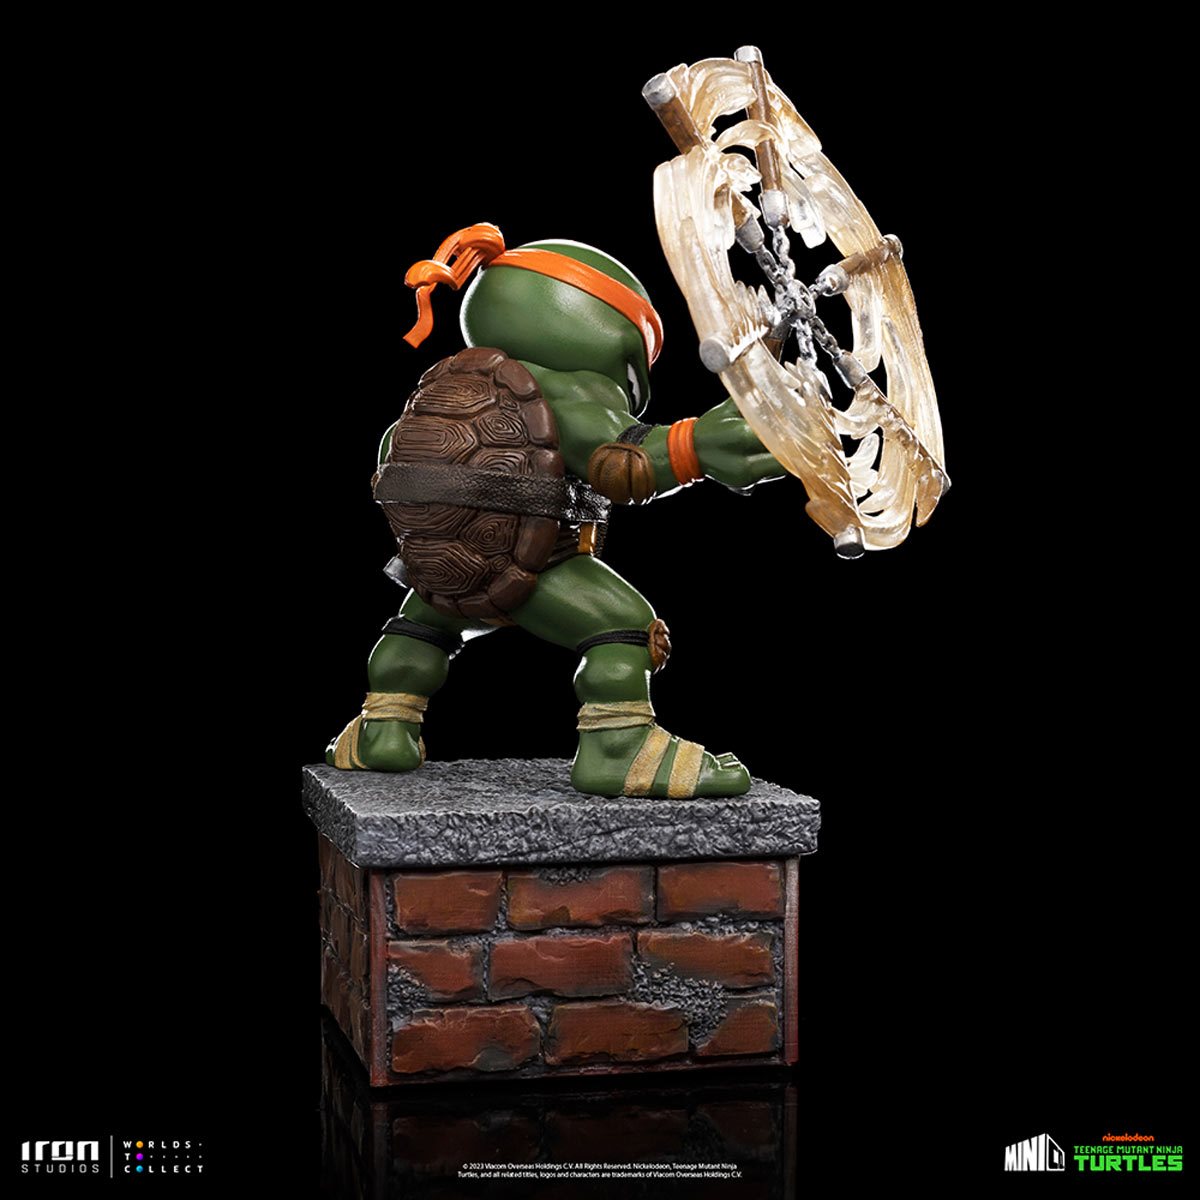 Tortugas ninja Teenage Mutatnt Ninja Ceramic Mag Michelangelo